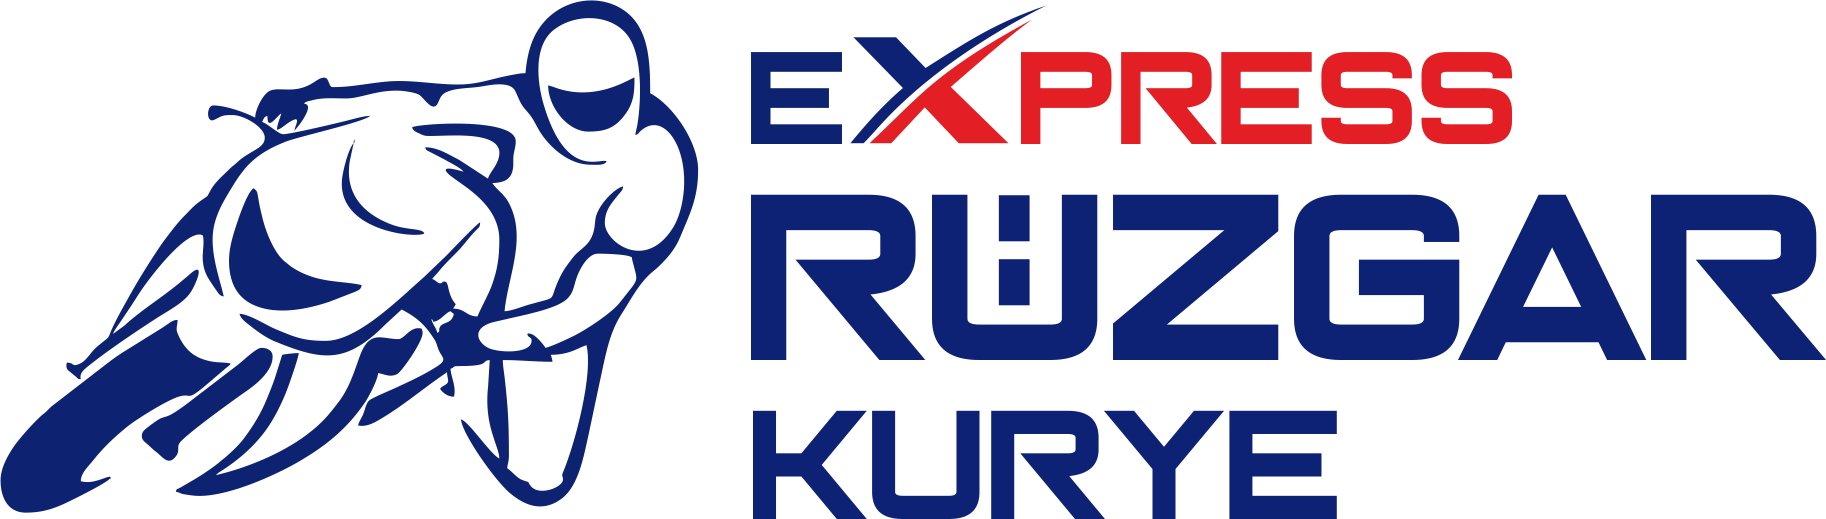 express kurye logo rüzgar istanbul motor kurye acil paket